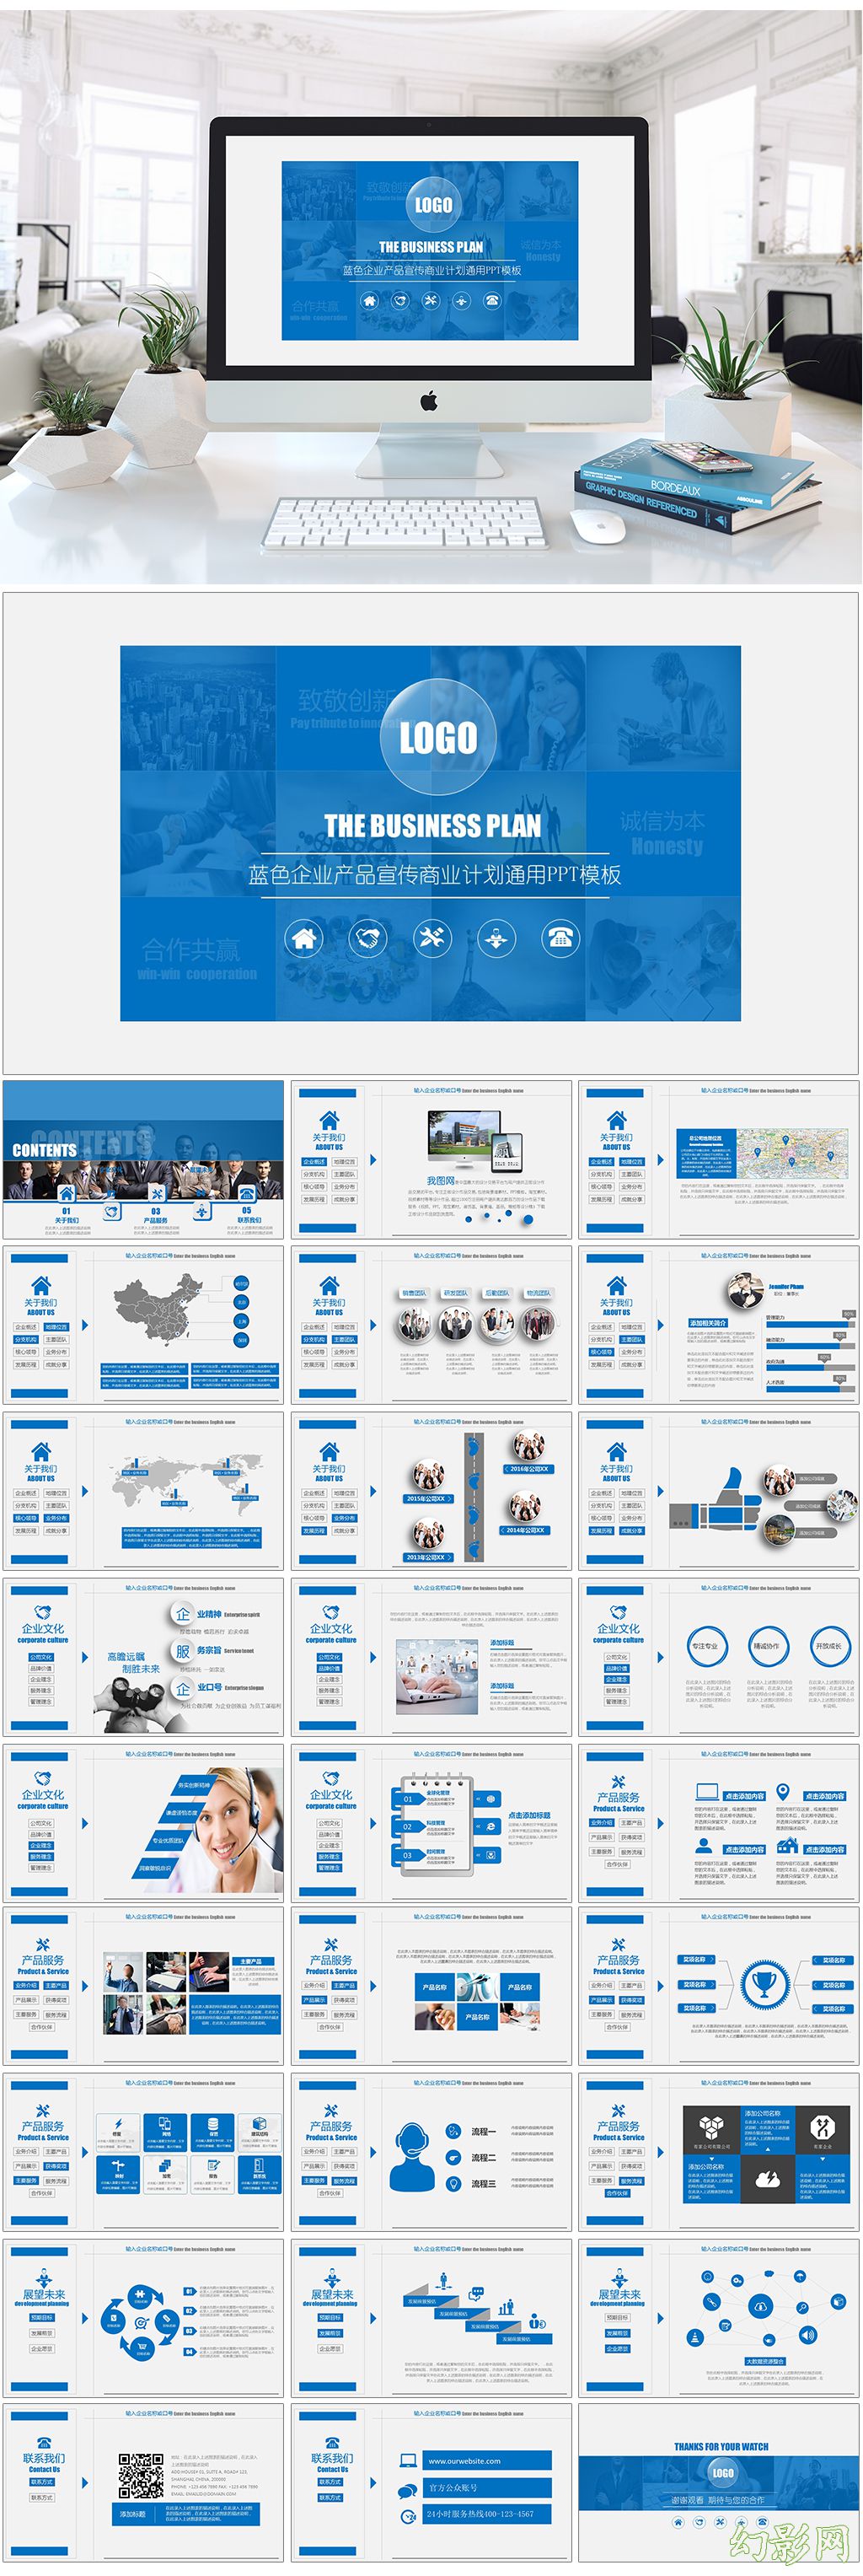 蓝色企业产品宣传商业计划营销策划企业手册通用PPT模板.jpg